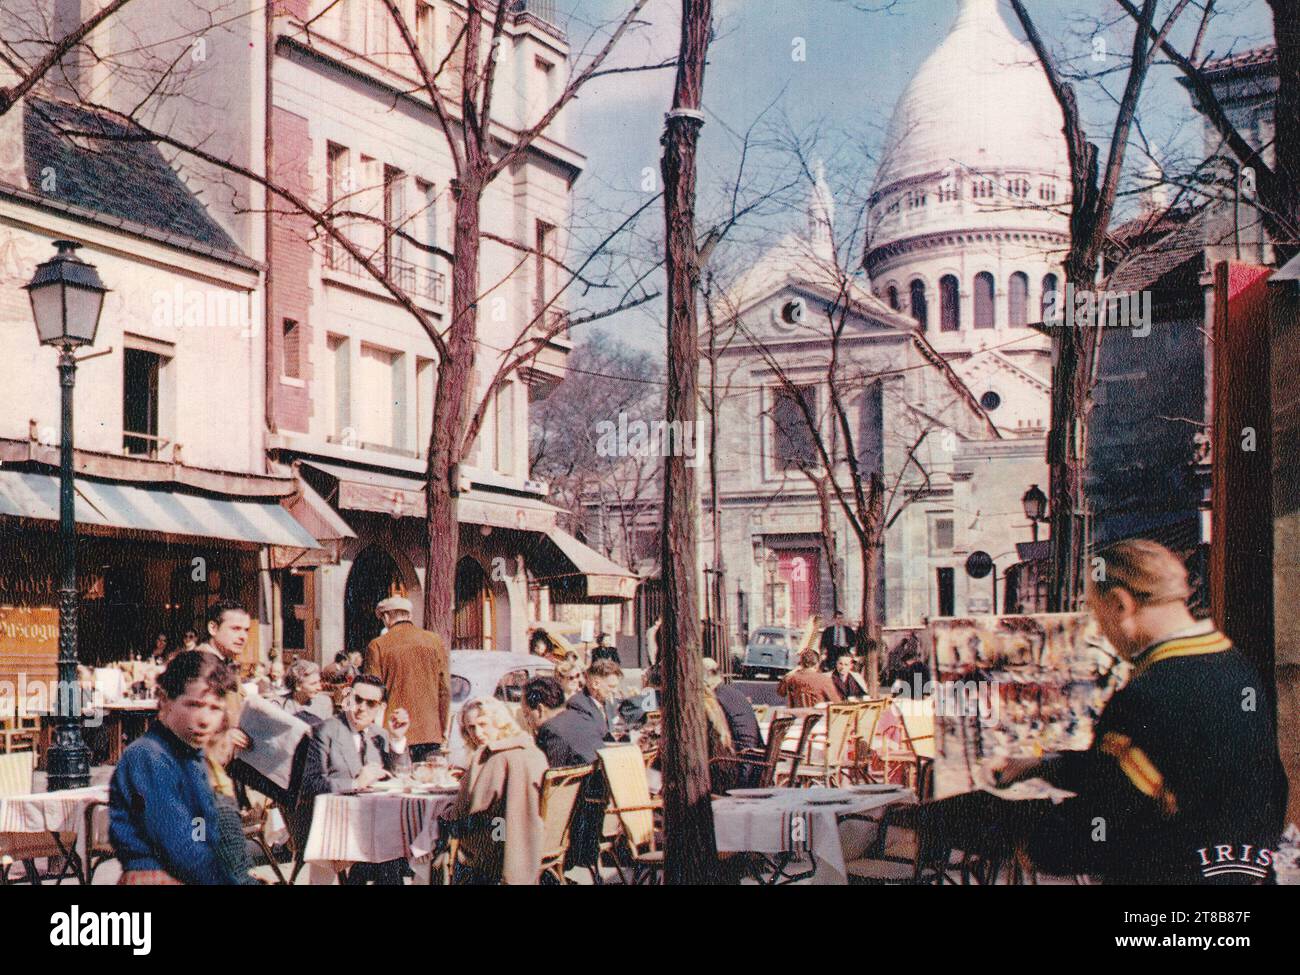 Vintage postcard of Paris - La Place du Tertre 1950s? Stock Photo